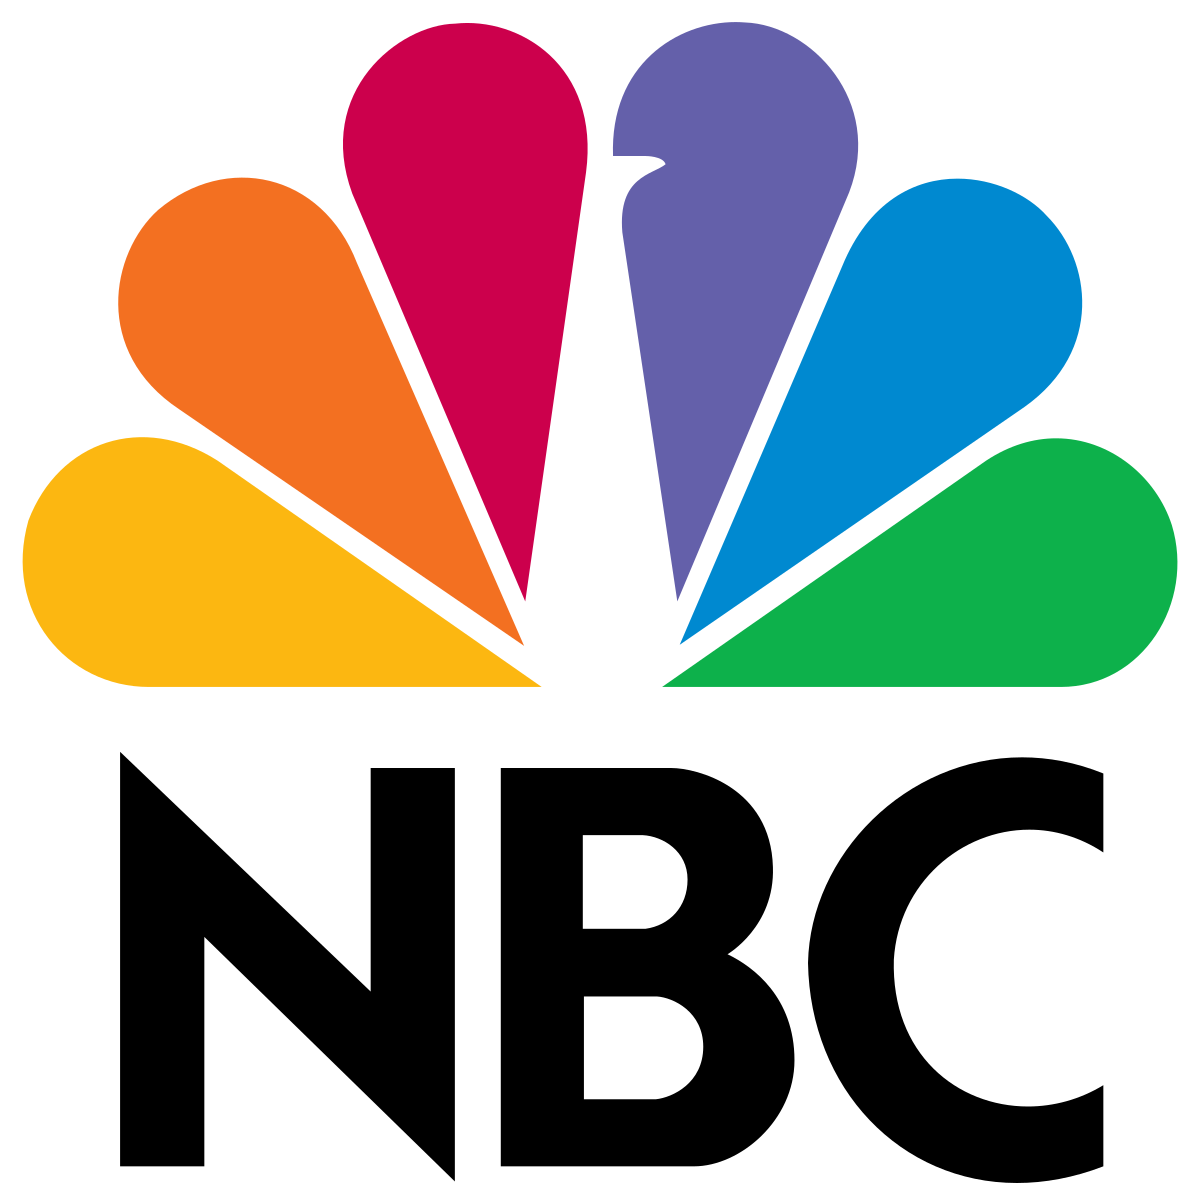 NBC logo hidden peacock